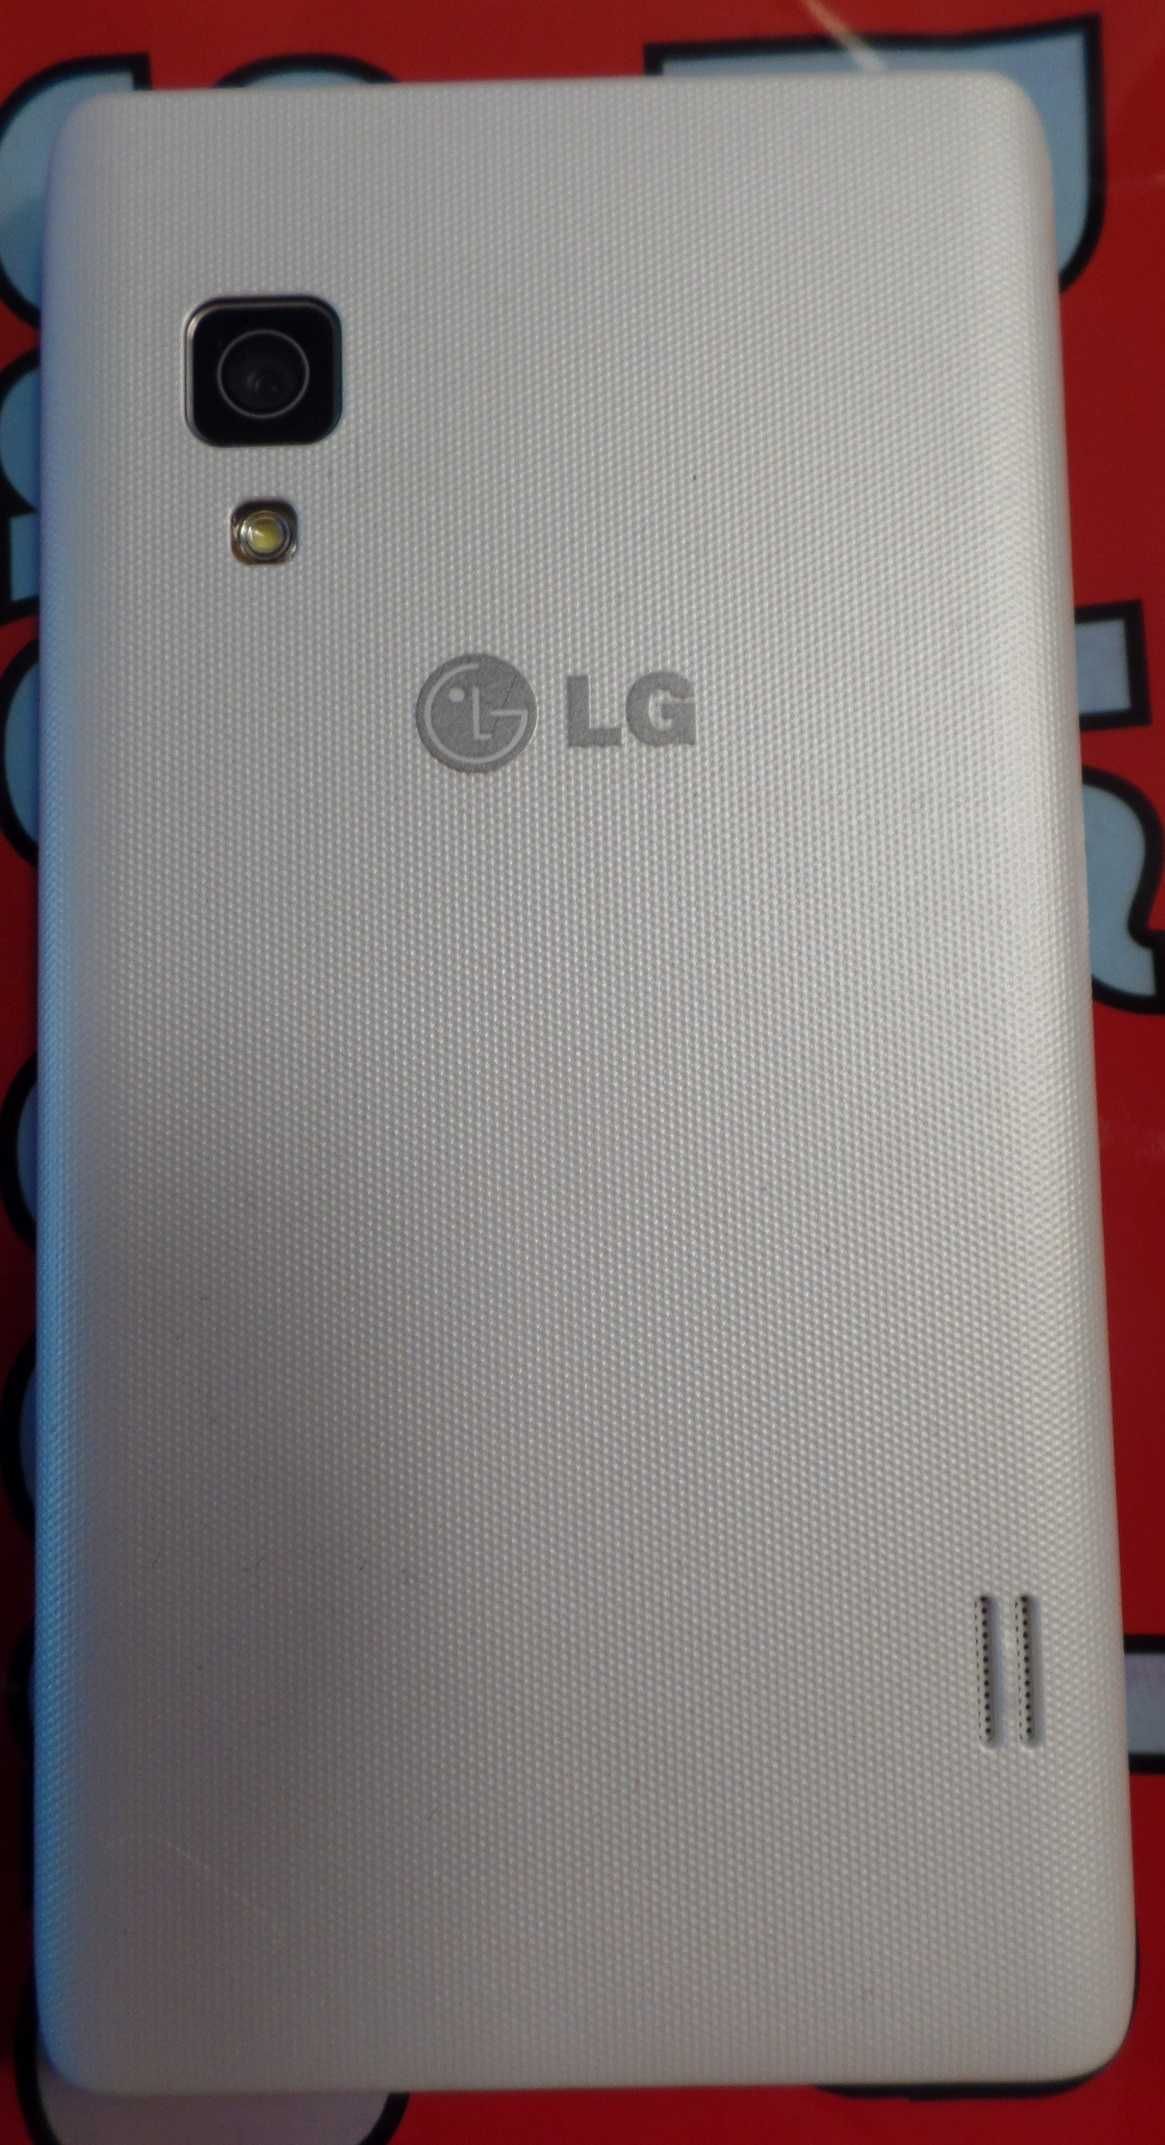 Telemóvel LG E 460 L5 usado mas completamente funcional (113)